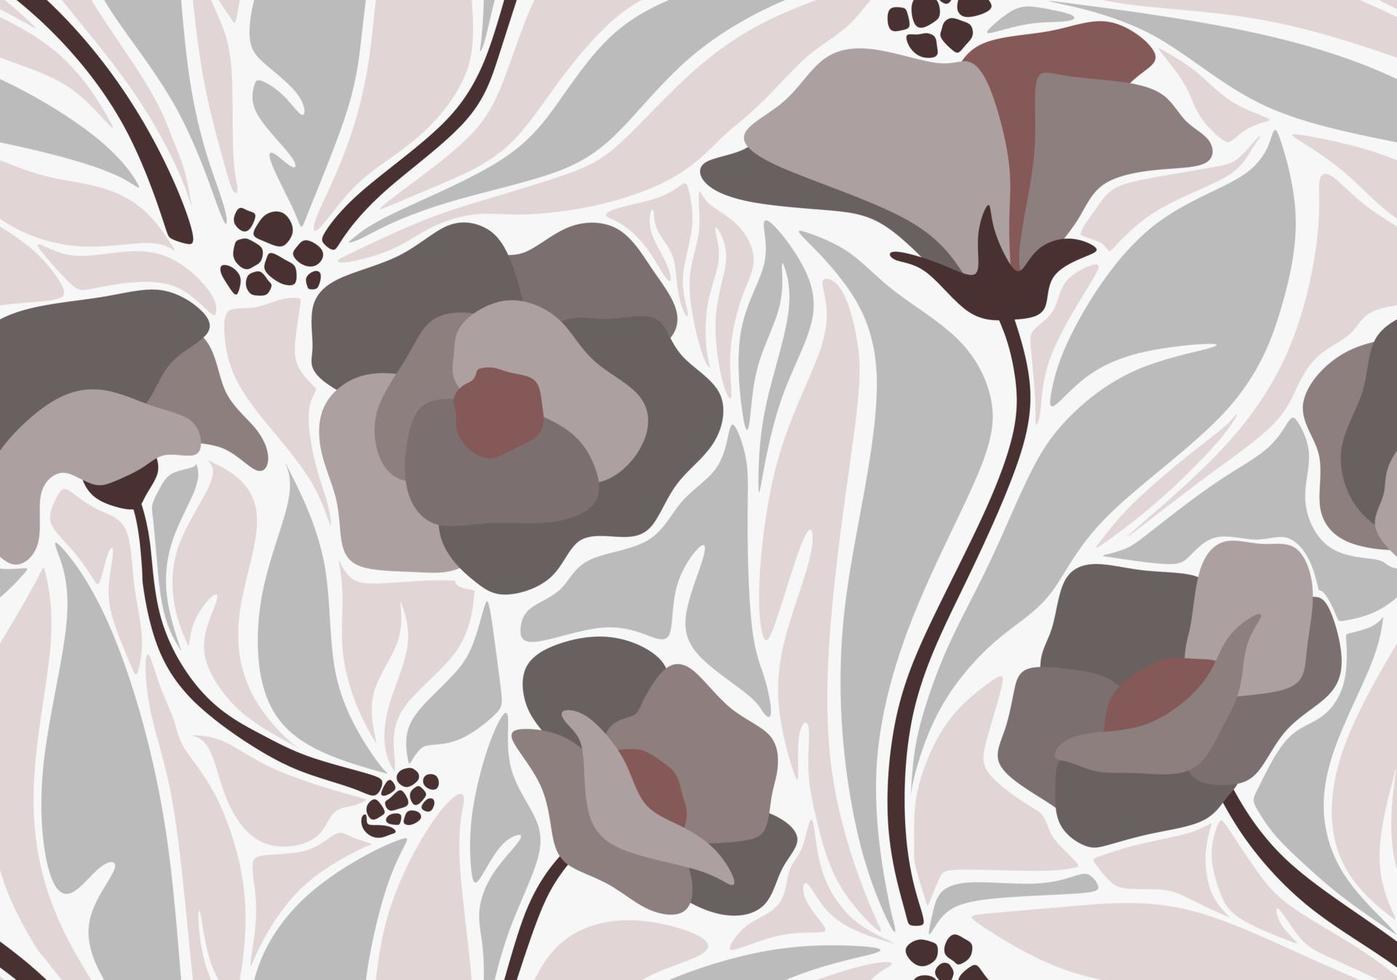 patrón sin fisuras con flores abstractas y dejar. diseño creativo de la superficie floral. vector de fondo